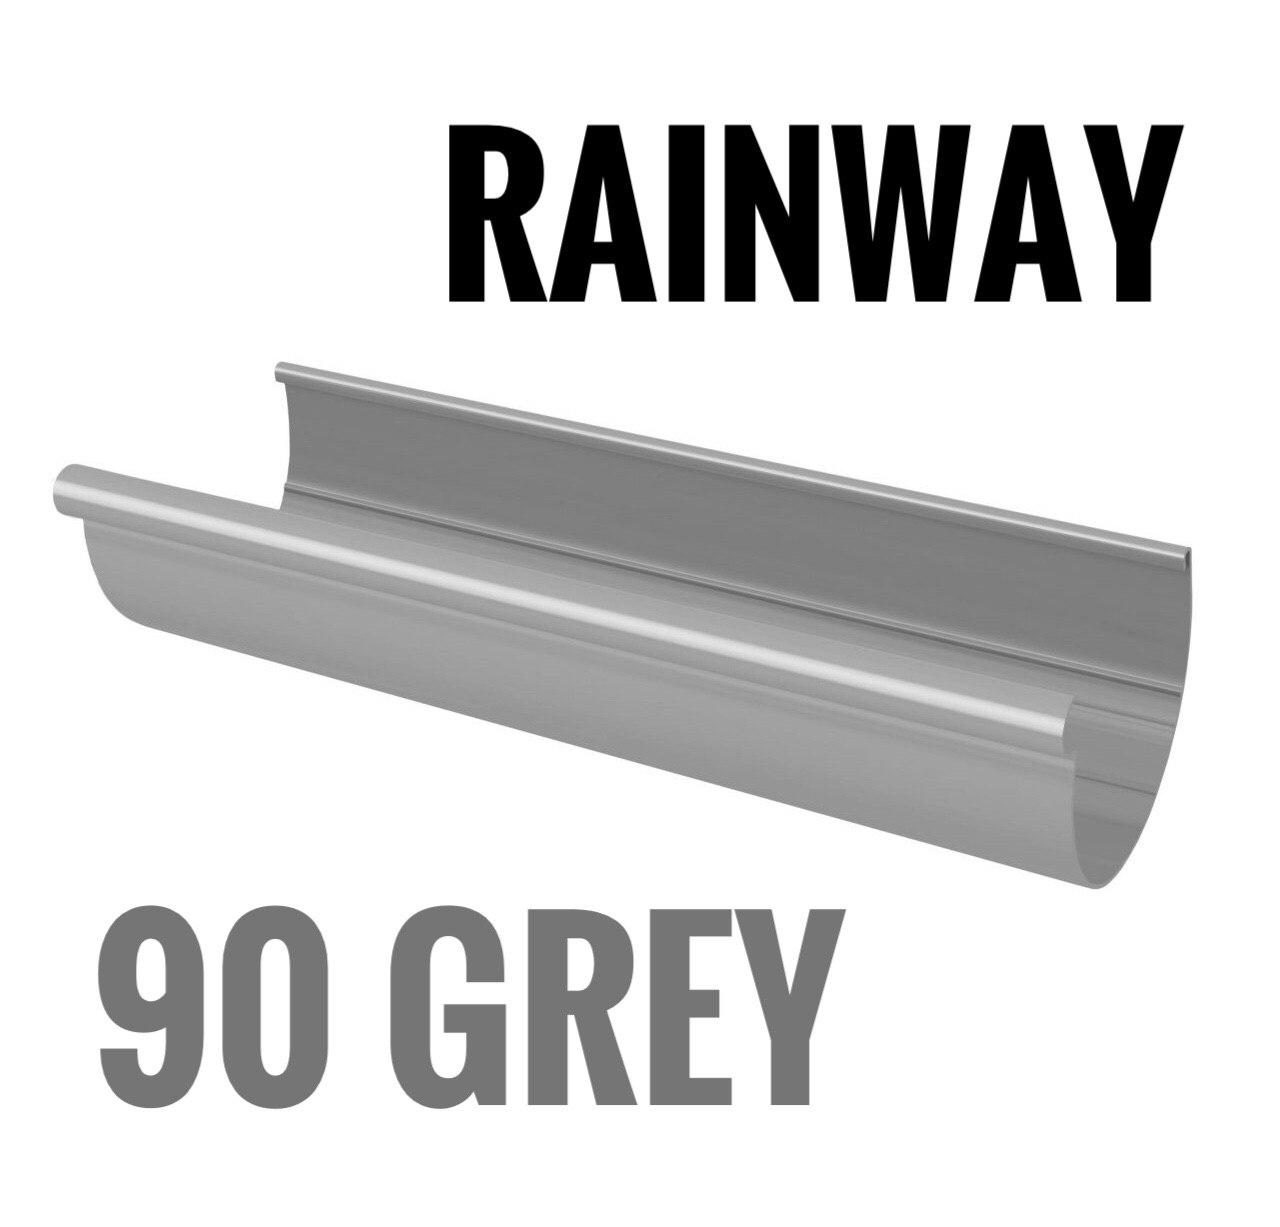 RAINWAY 90 серый